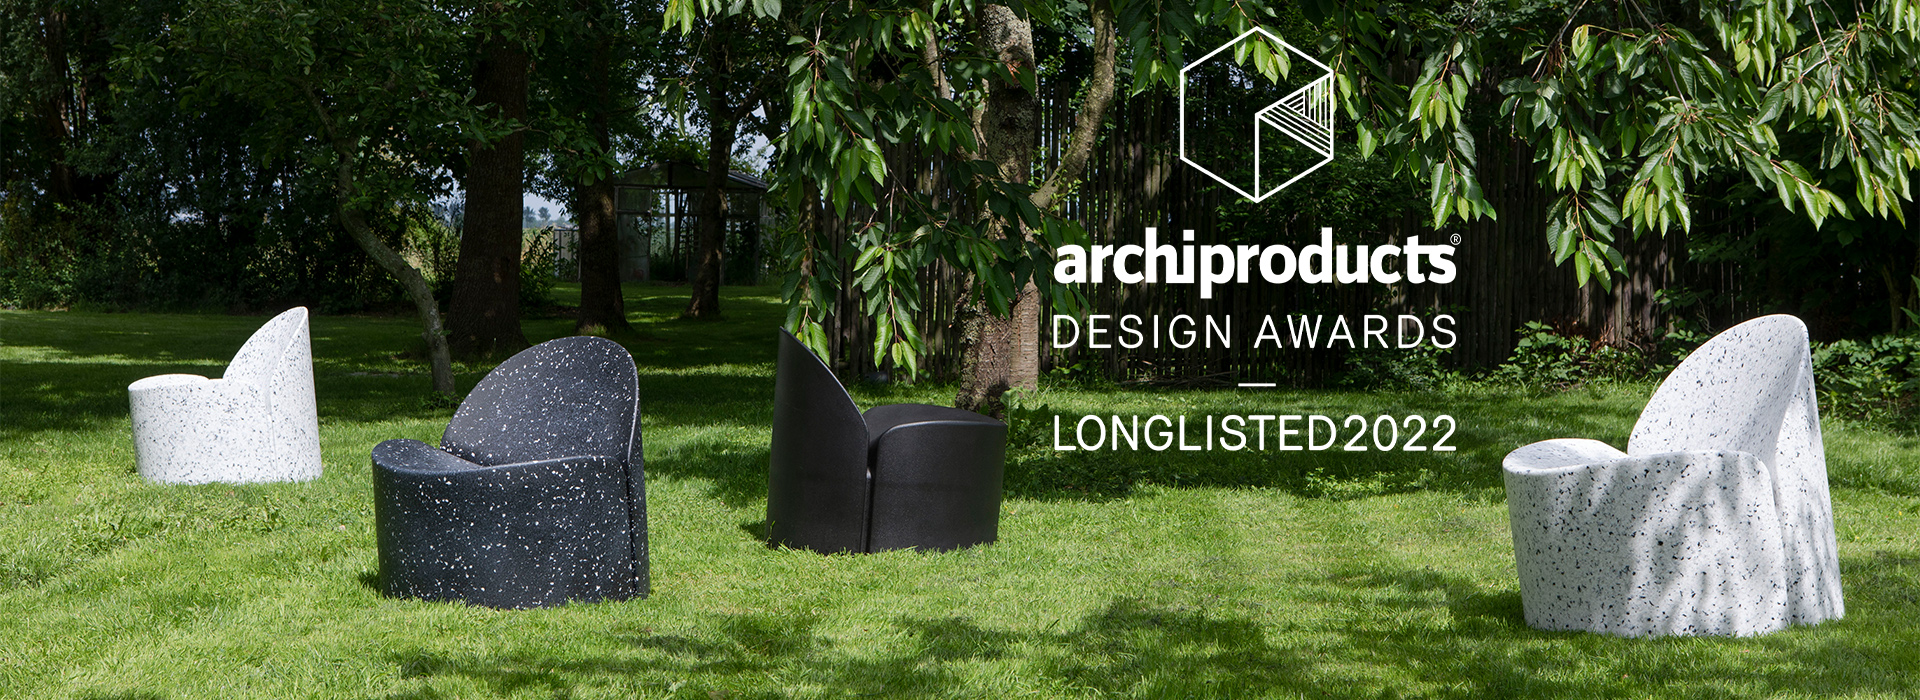 A été retenu sur la longlist des Archiproducts Design Awards 2022 : le fauteuil Bloom de Banne